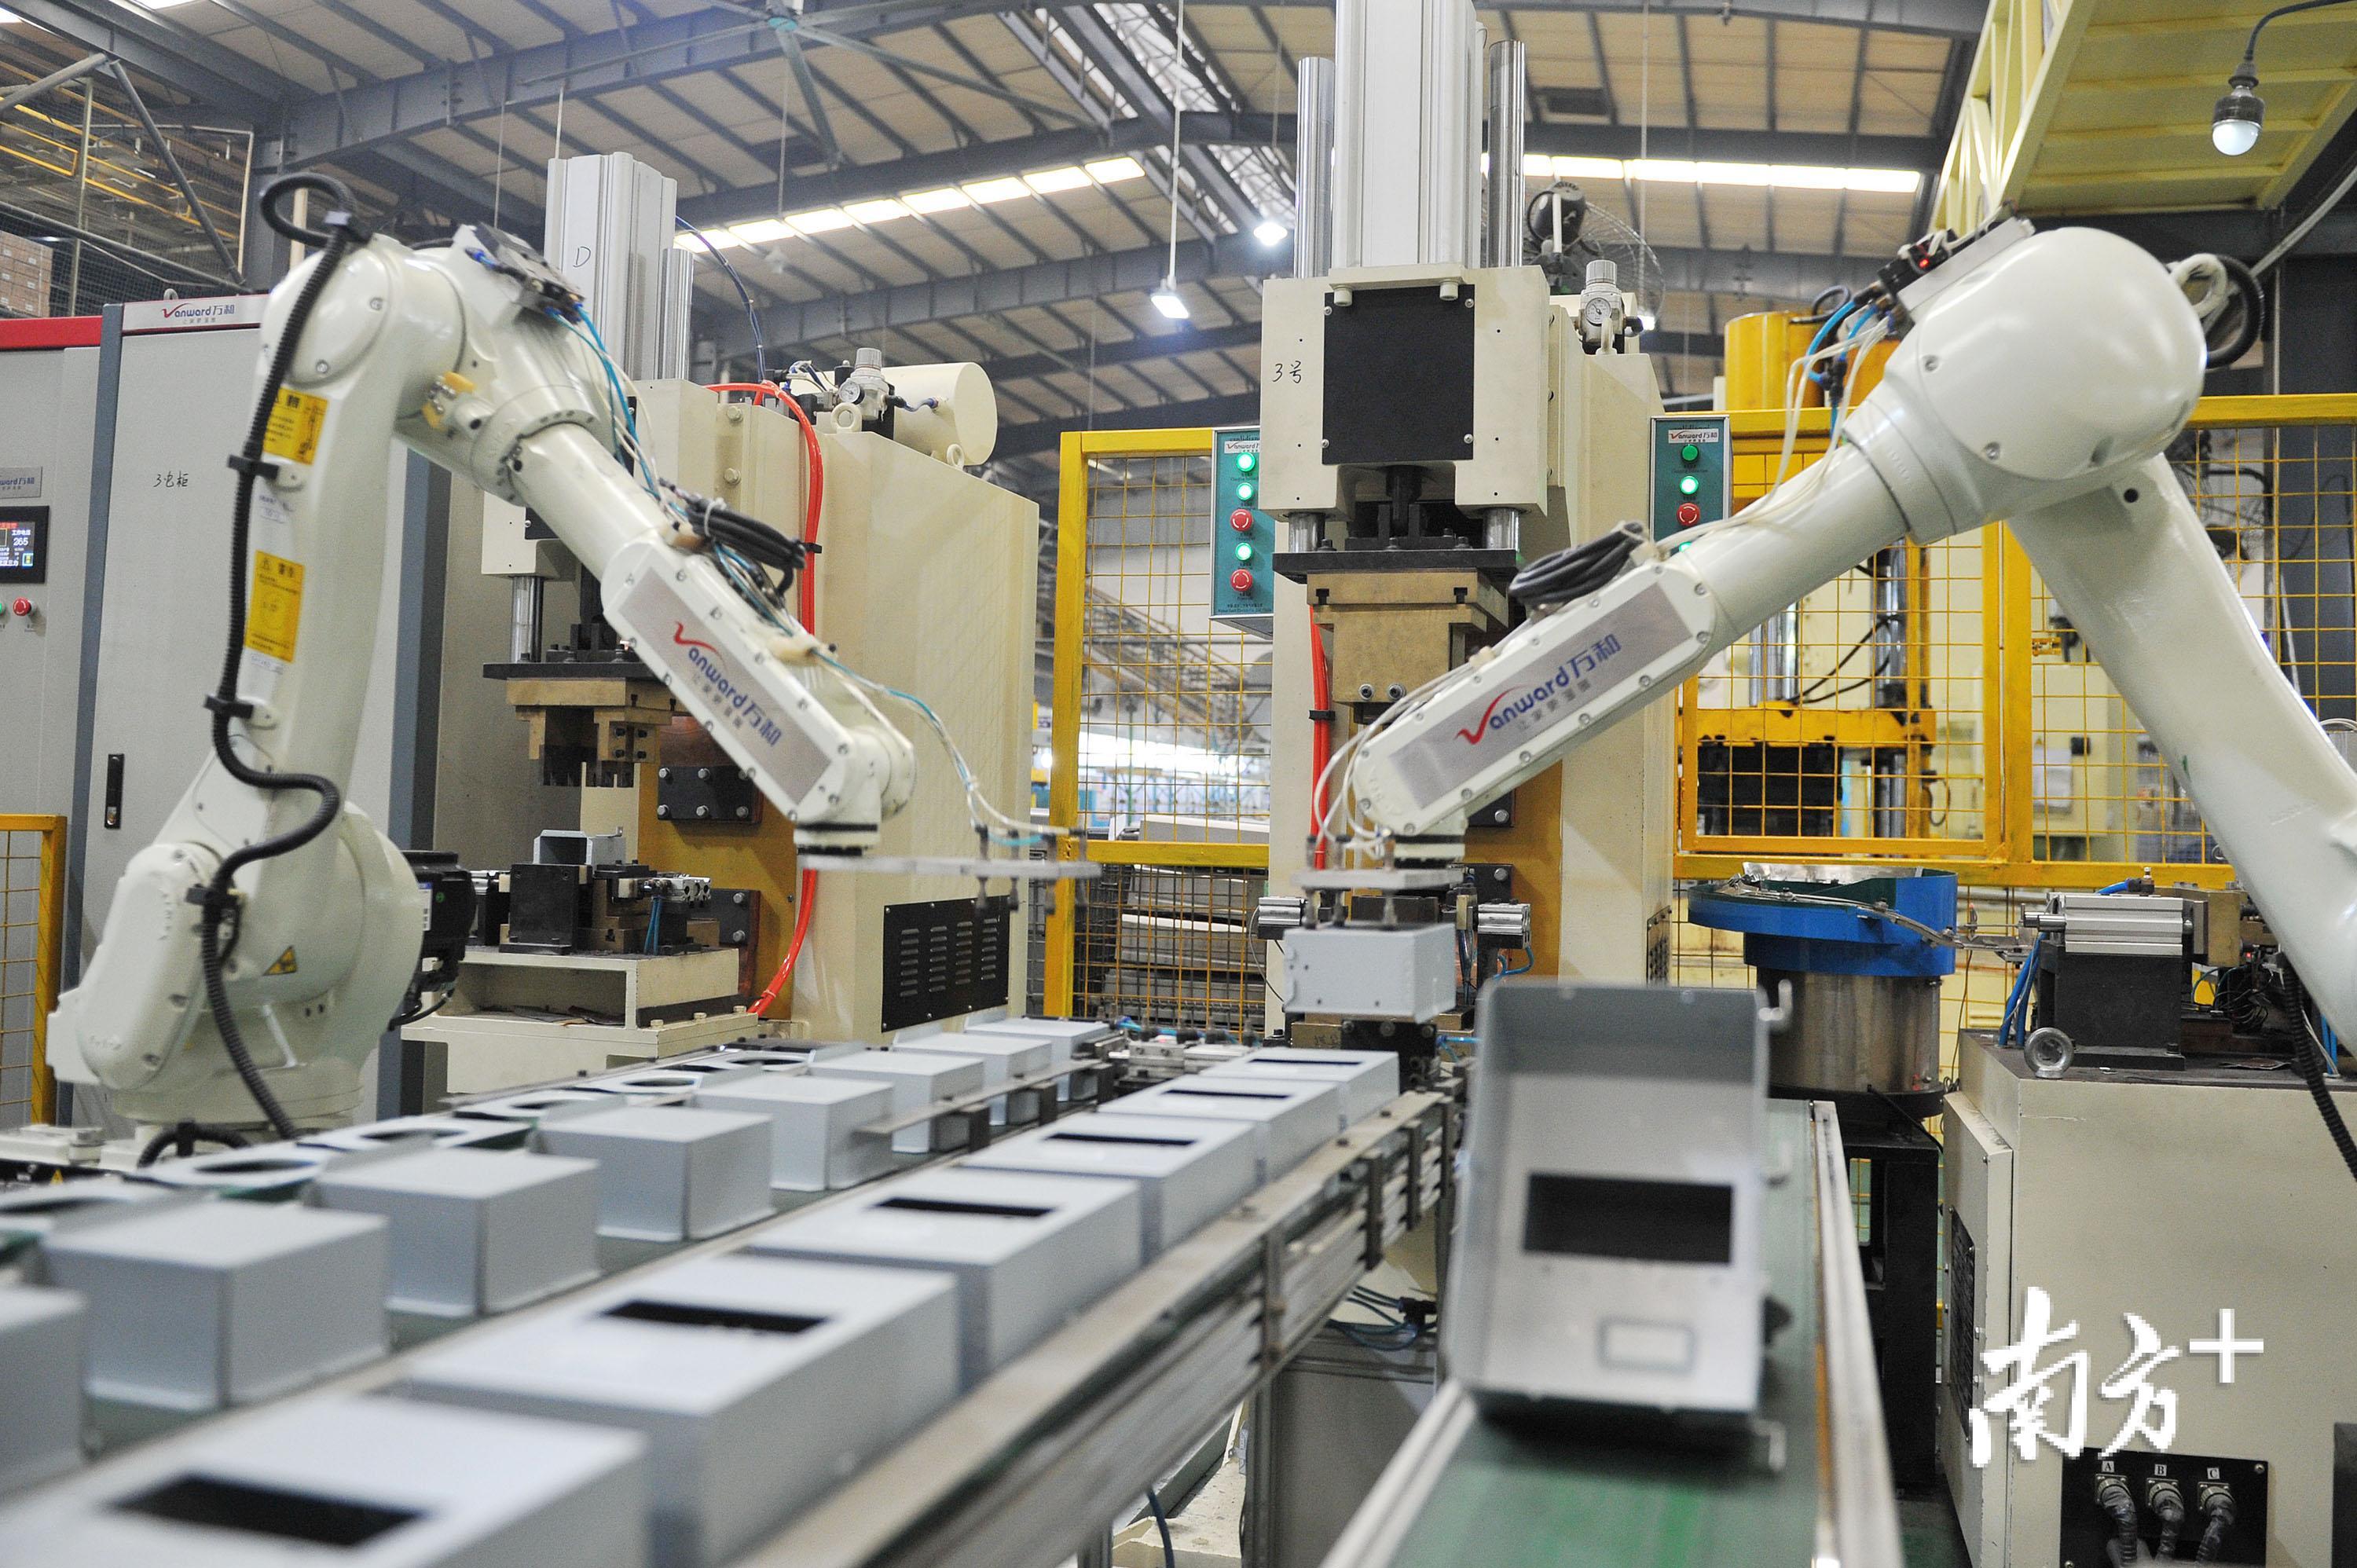 万和生产车间里的自动化生产线使用多台智能机器人协作生产